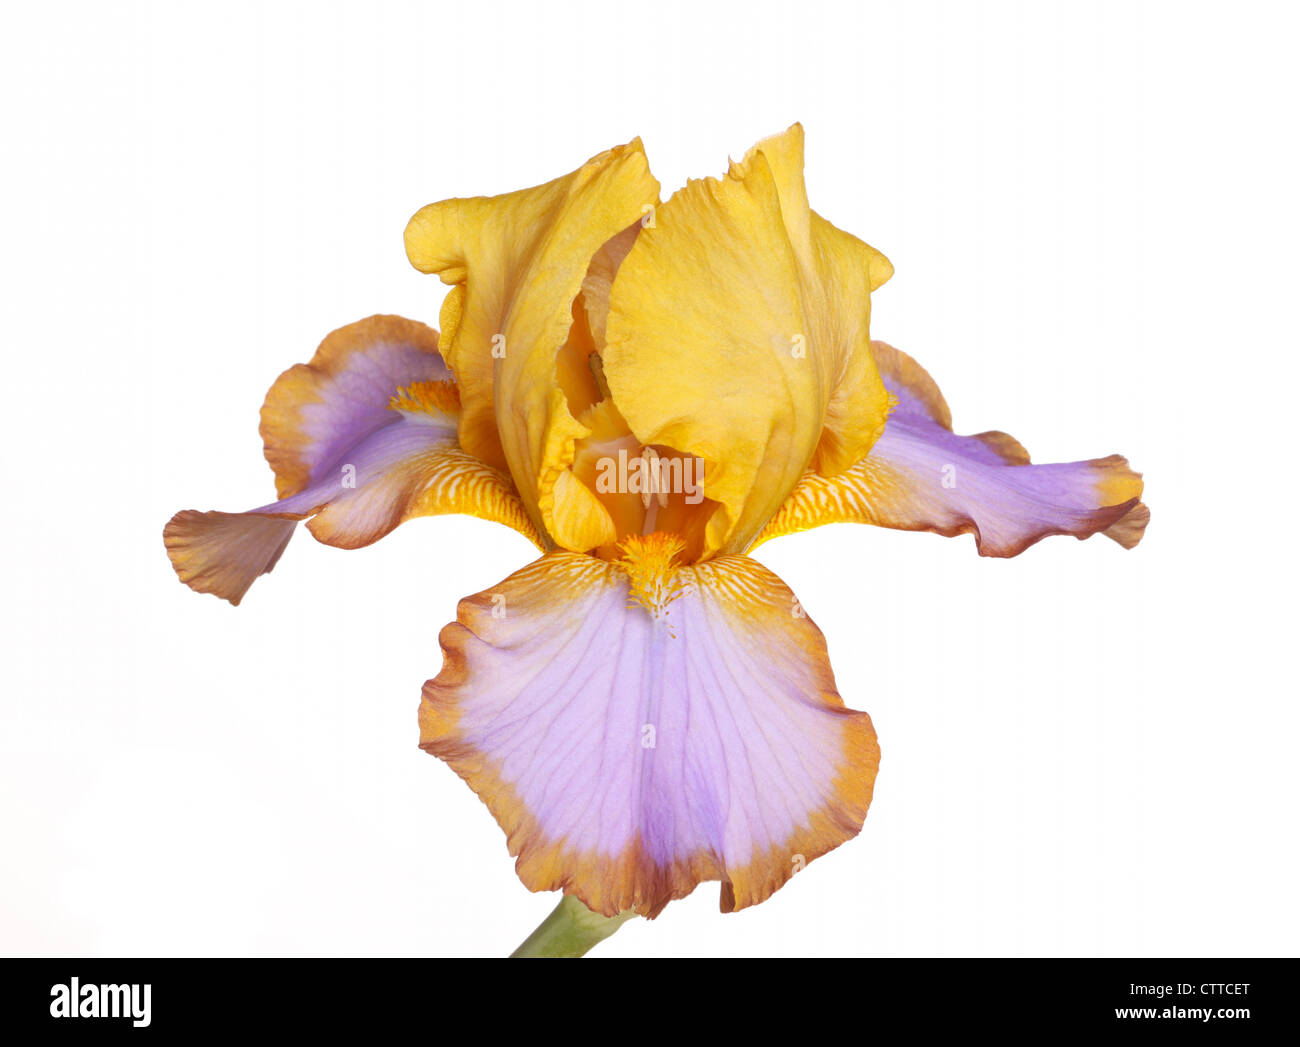 Solo amarillo, marrón y flor morada de quebrantahuesos (Iris germanica)  cultivar aisladas lazo marrón sobre un fondo blanco Fotografía de stock -  Alamy